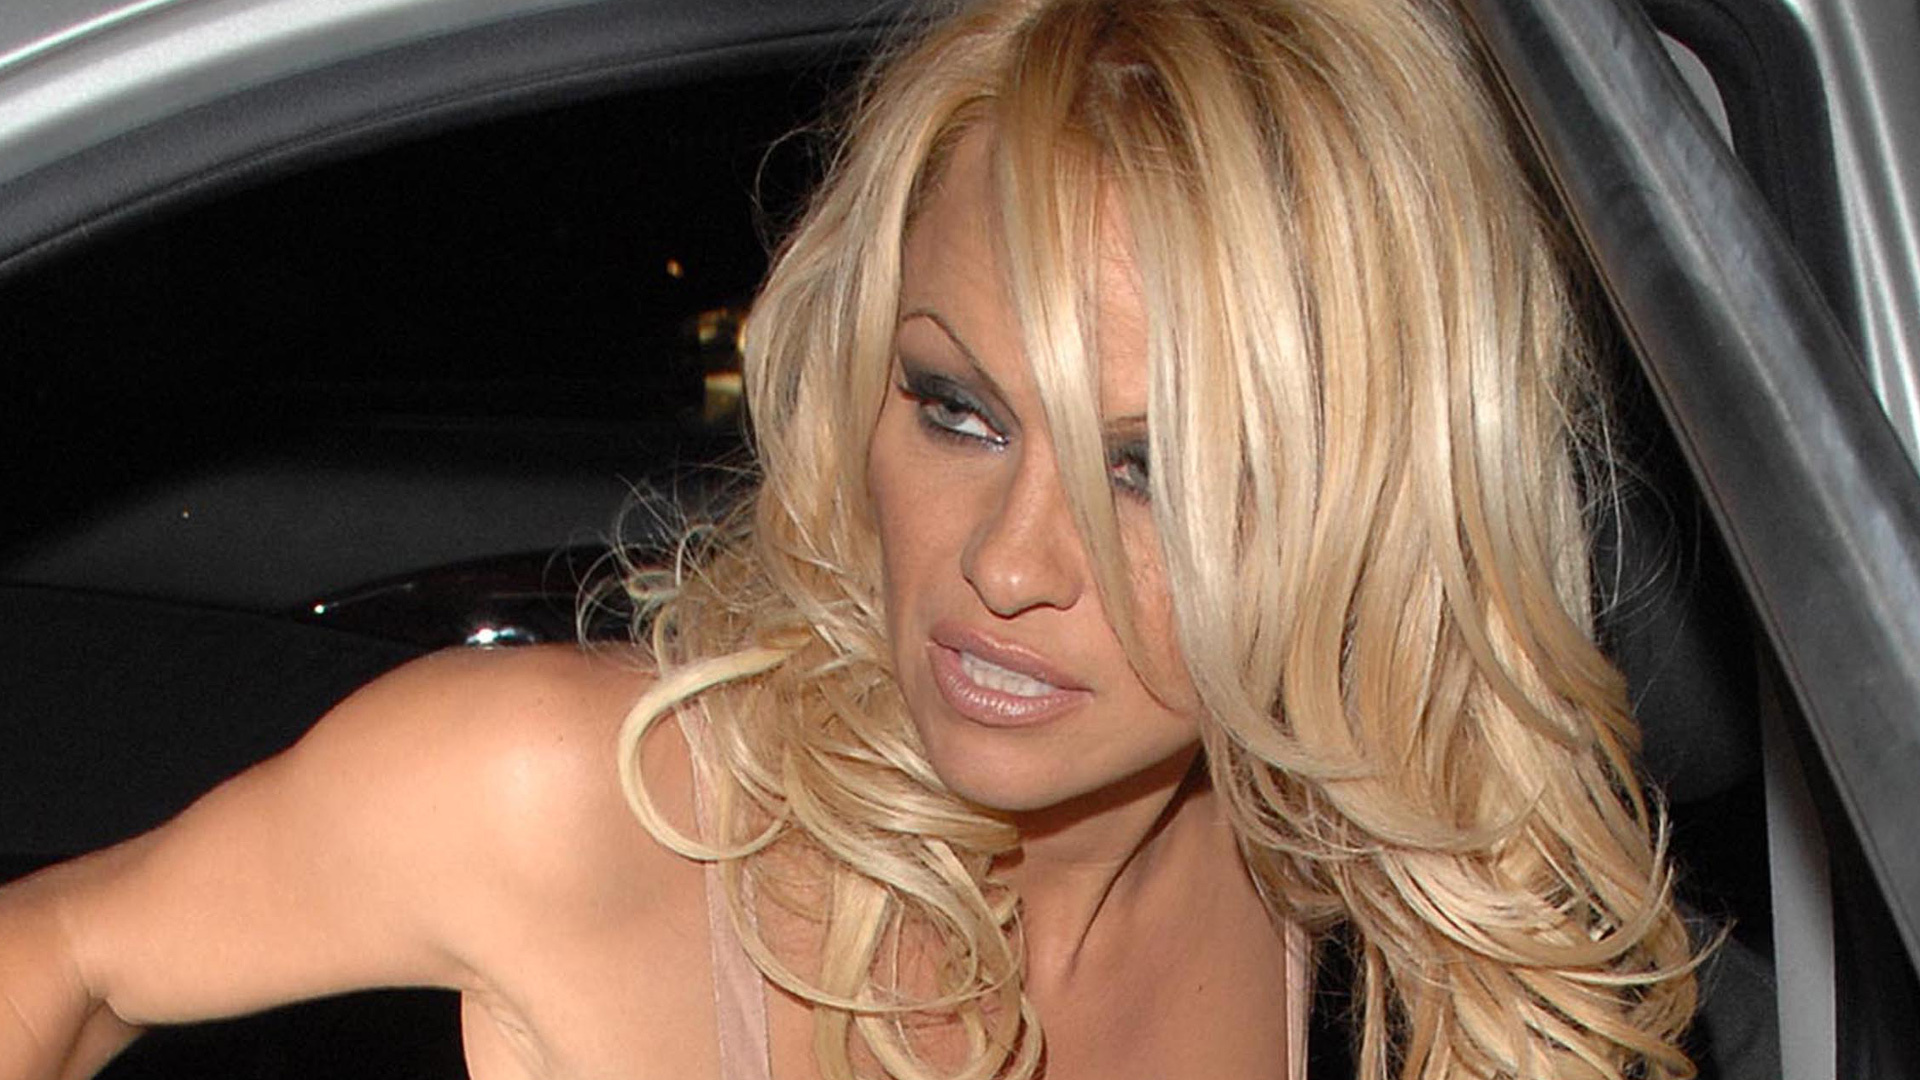 Borachasvioladas - Pamela Anderson: el vÃ­deo porno casero fue su mayor pesadilla